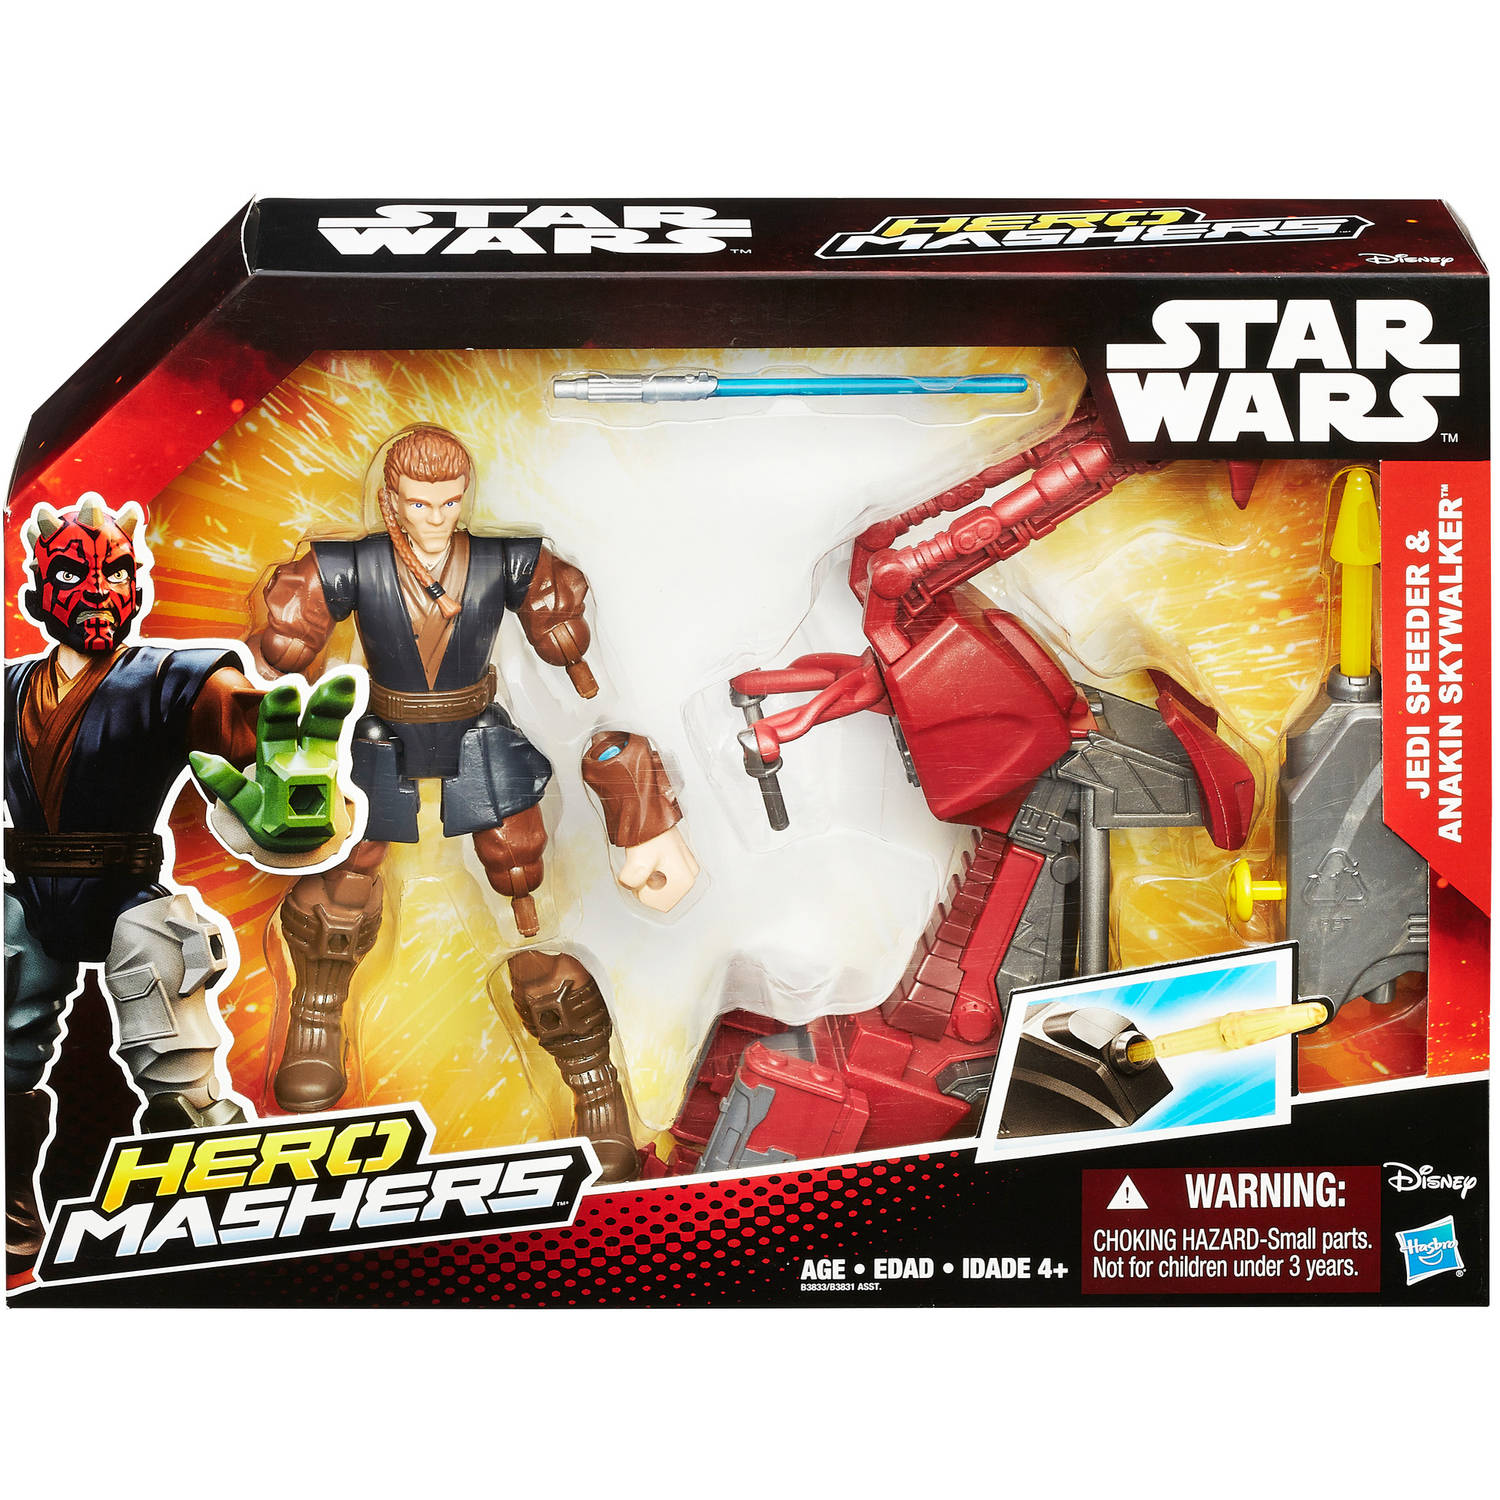 Star Wars Hero Mashers Jedi Speeder and Anakin Skywalker - image 2 of 10